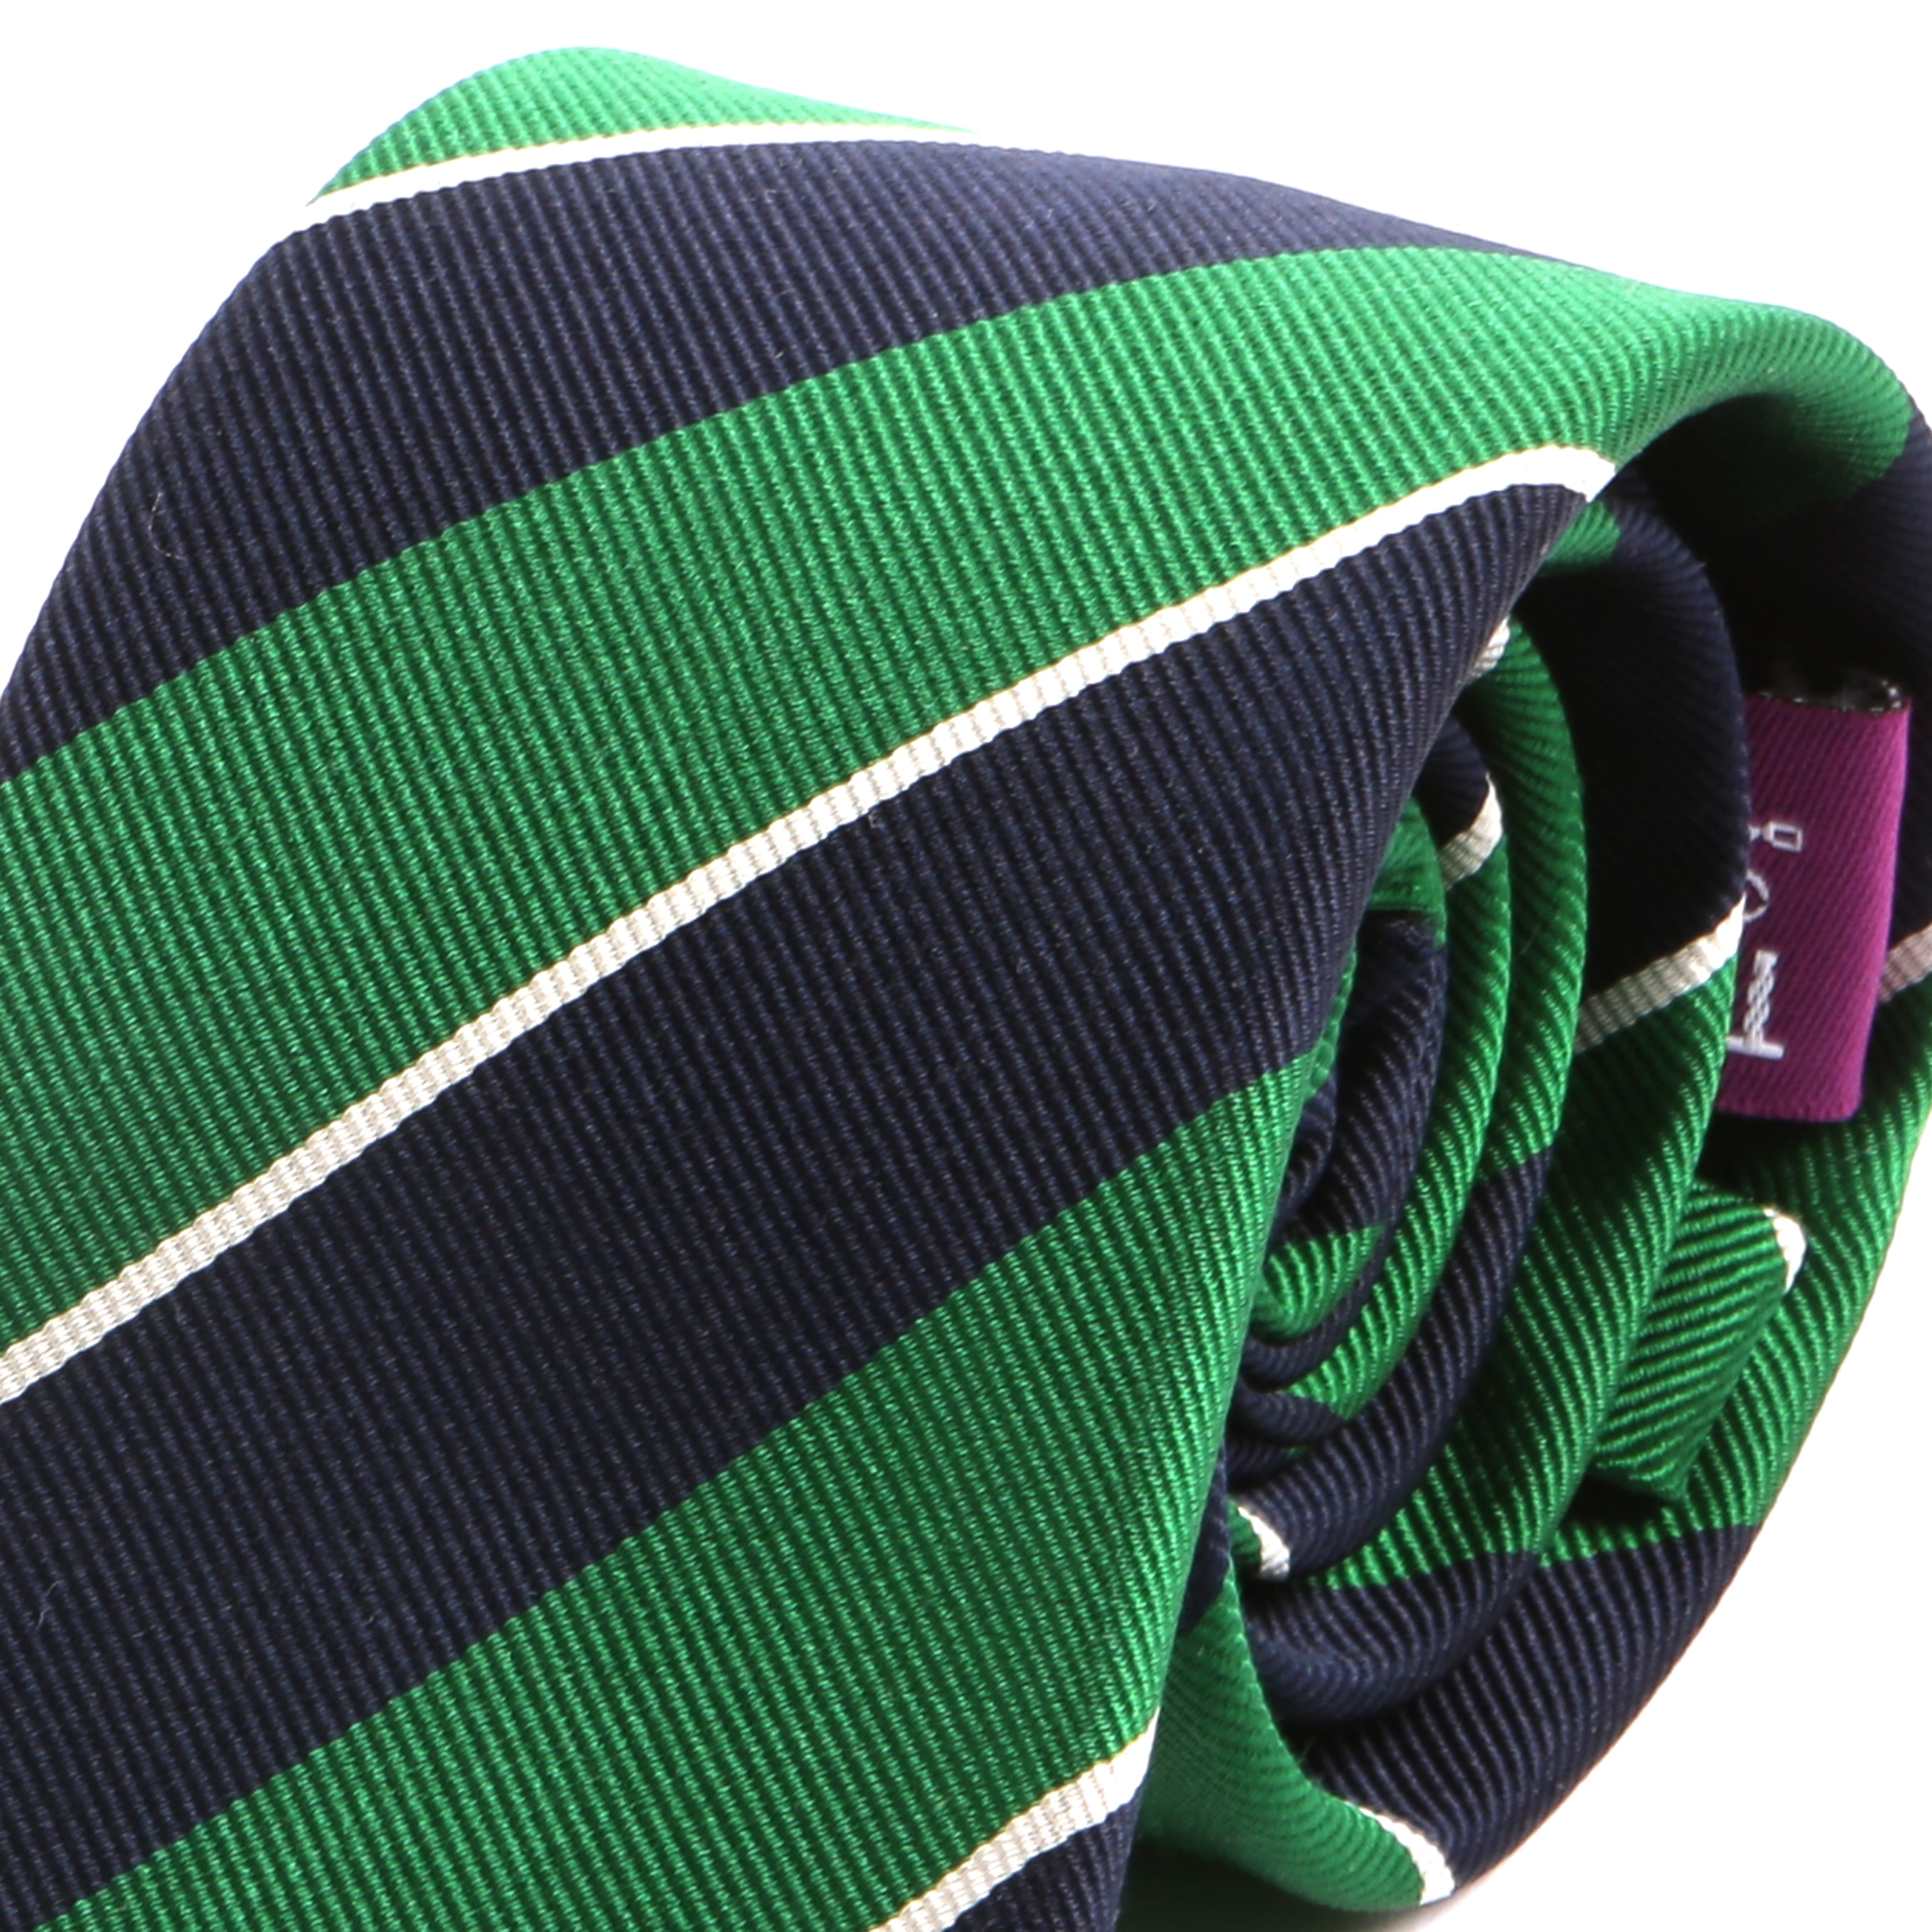 Light Green & Navy Silk Slim Tie | Style II - Tie Doctor  